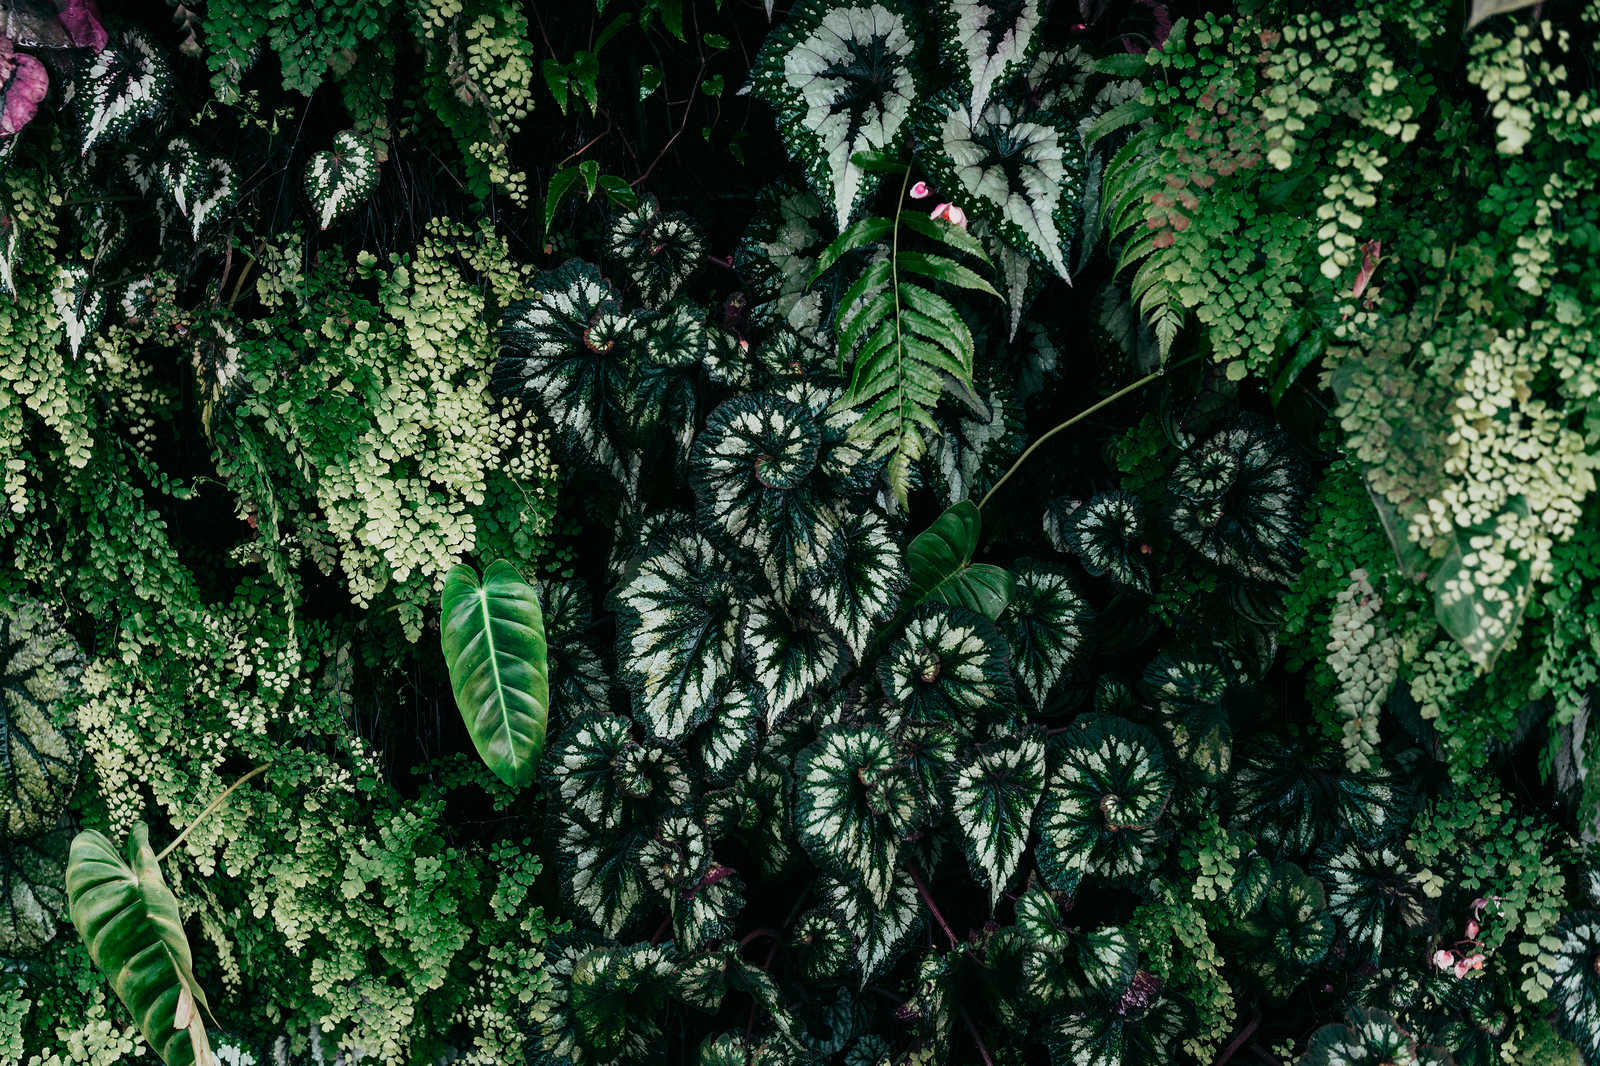             Deep Green 2 - Tableau toile Fourrés de feuilles, fougères & plantes suspendues - 1,20 m x 0,80 m
        